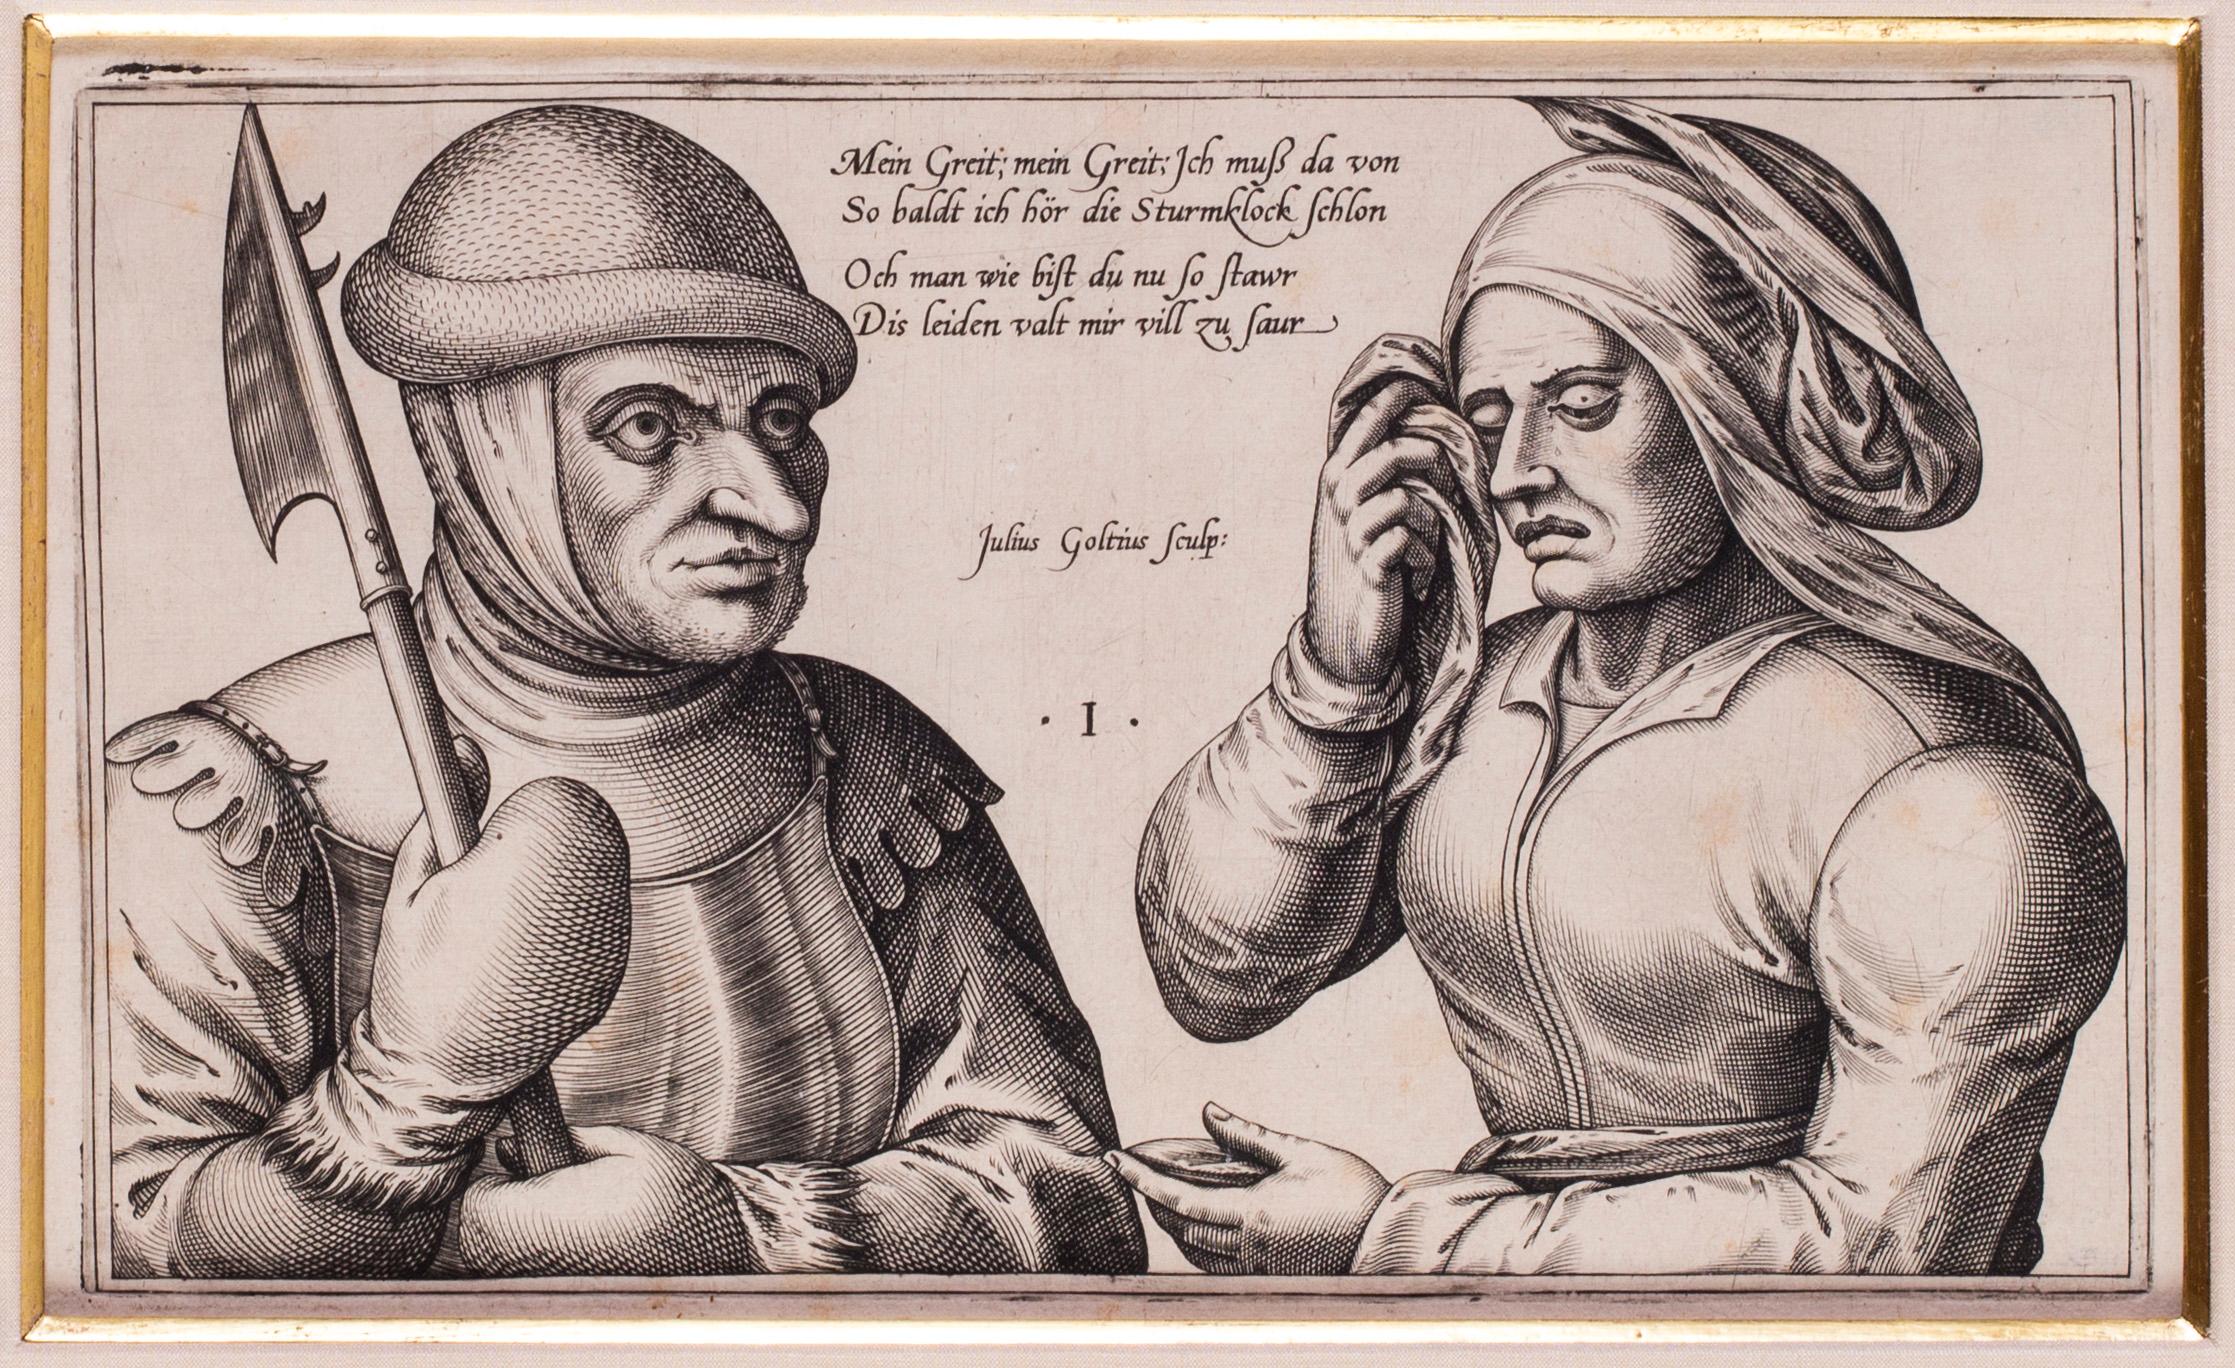 Julius Goltzius (Néerlandais c.1550-1595)
Mein Greit ; Mein Greit
Gravure
6.5/8 x 11.3/8 in. (16,8 x 29 cm.) (mesuré au bord de l'enveloppe)
Christie's a suggéré que cette impression date du début du 17ème siècle.  
